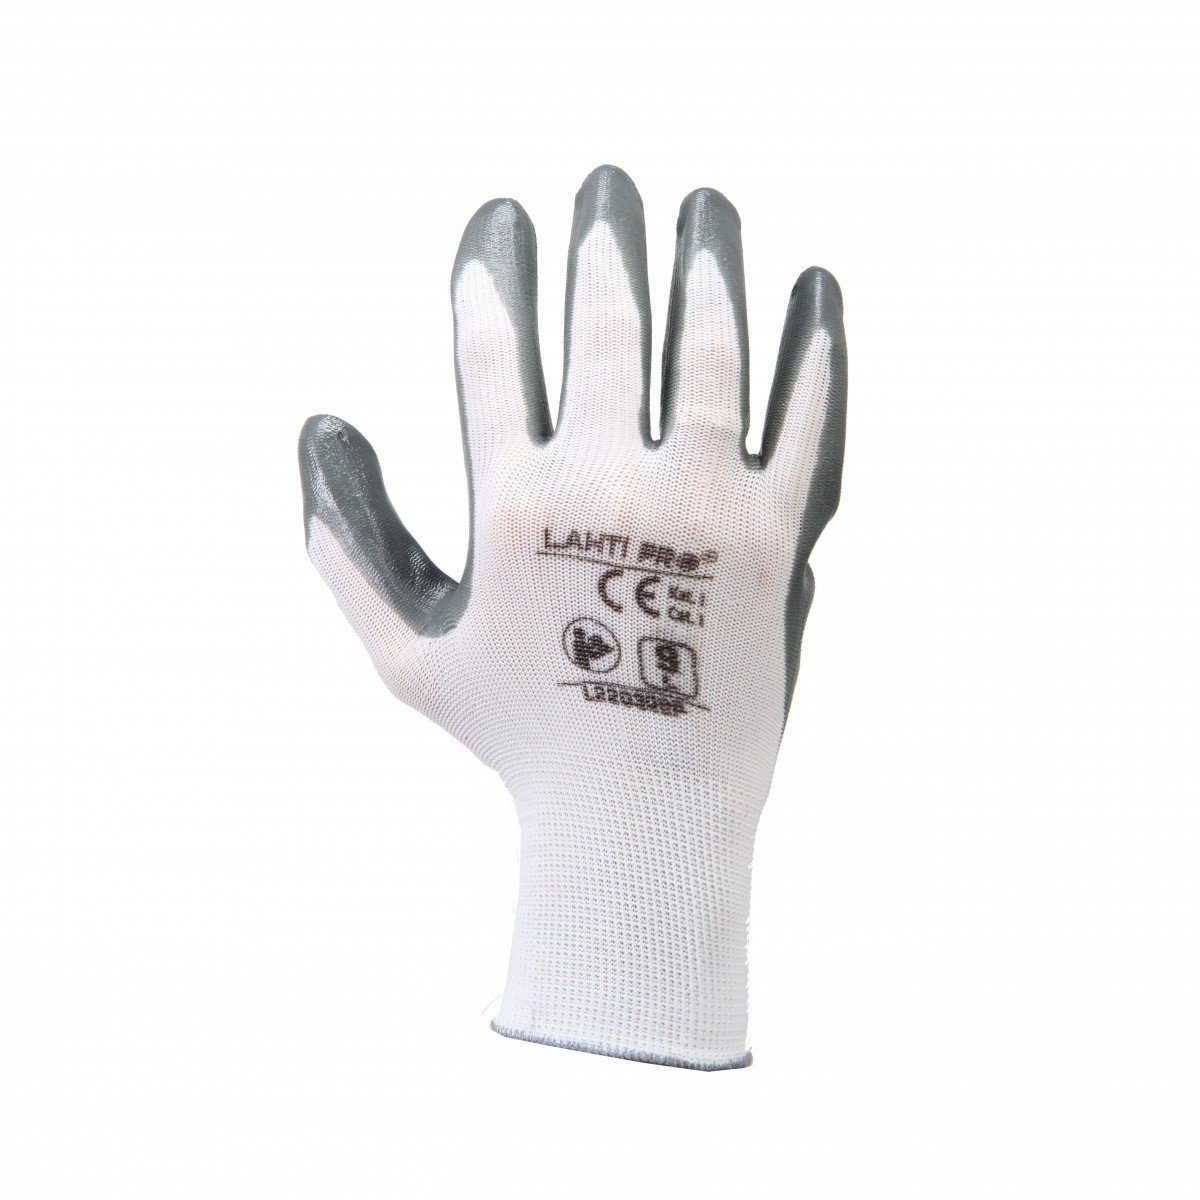 LAHTI PRO Rękawice nitryl szaro-białe rozmiar 9 L220309K LPL220309K